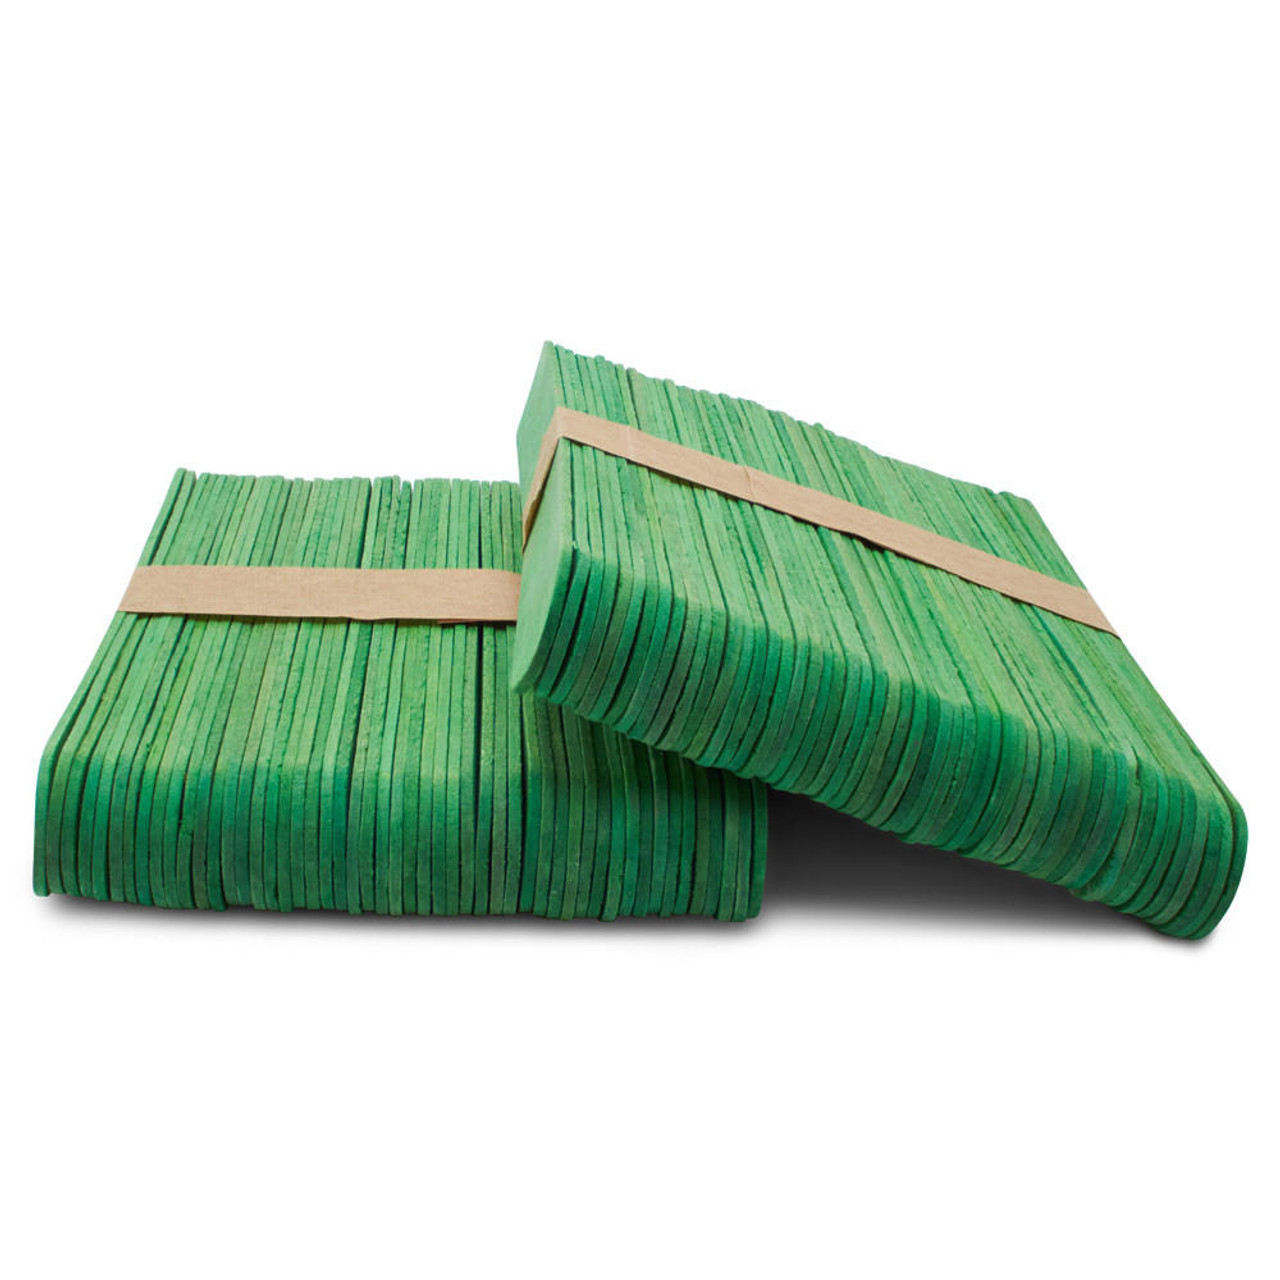 6” Jumbo Green Popsicle Sticks, Pack of 100